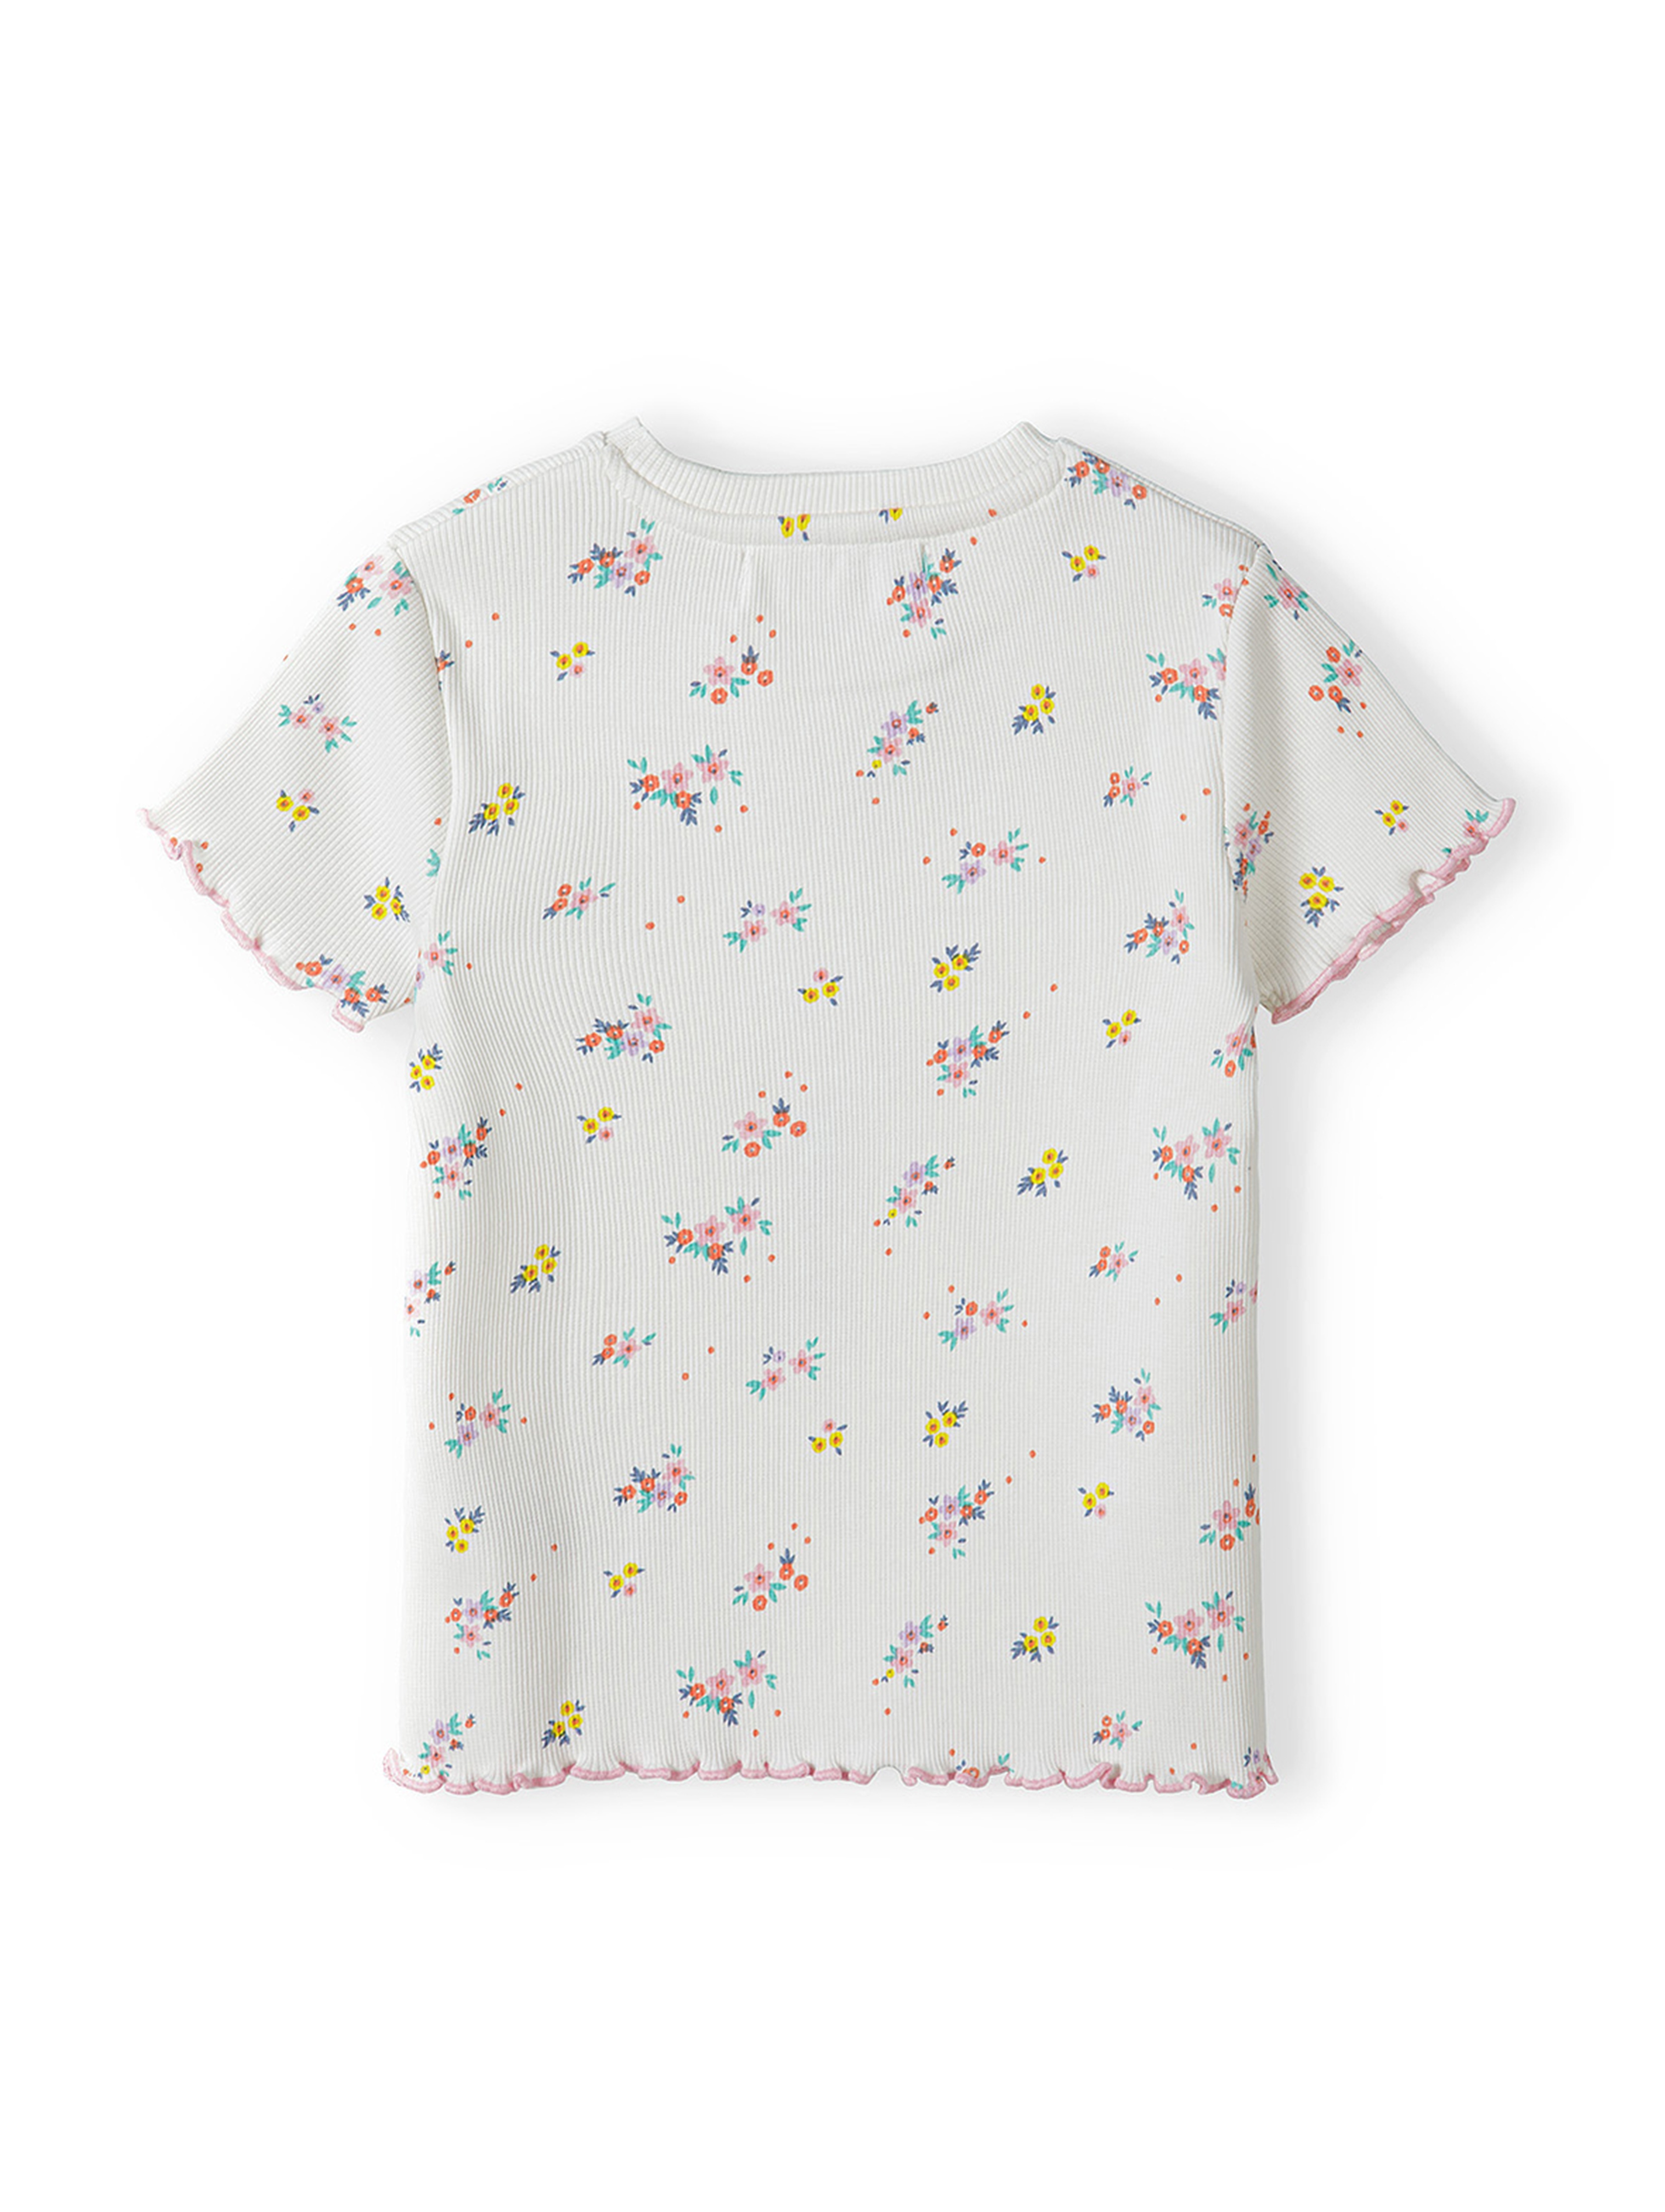 Prążkowana bluzka dla niemowlaka- ecru